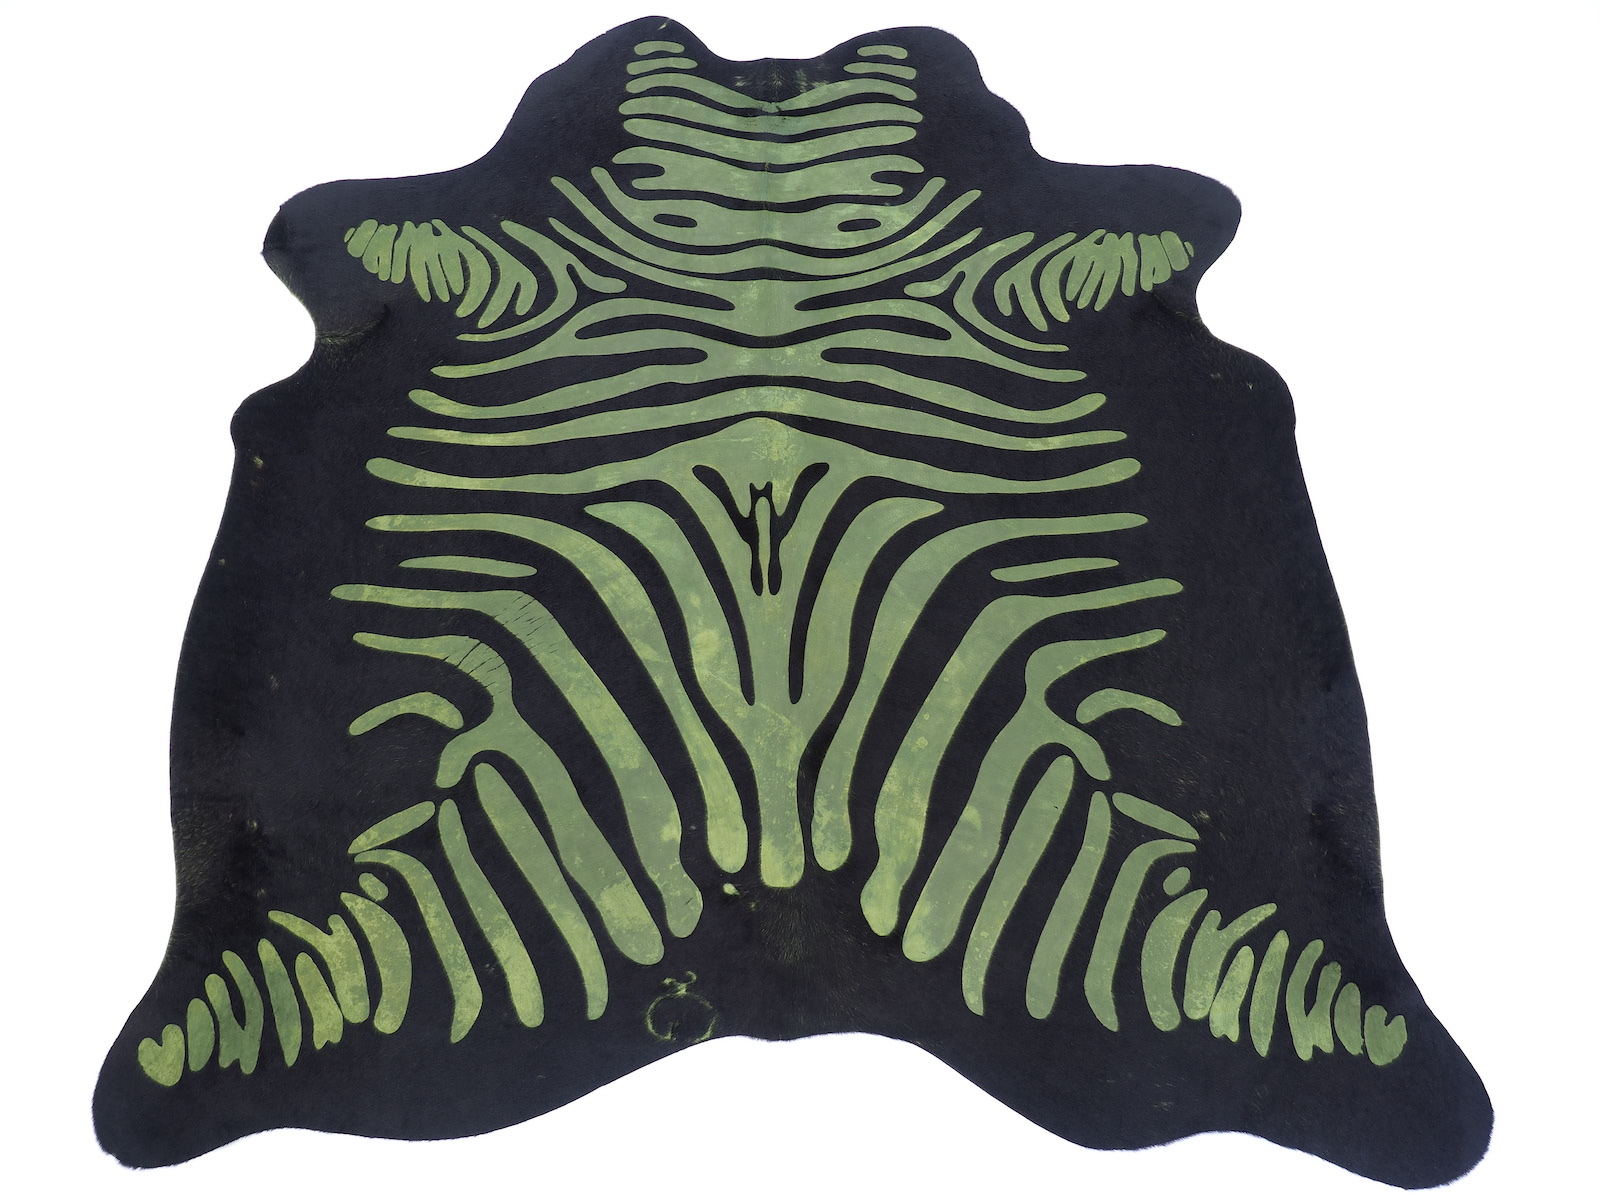  Шкура коровы под винтажную Зебру матовая зеленая арт.: 29069